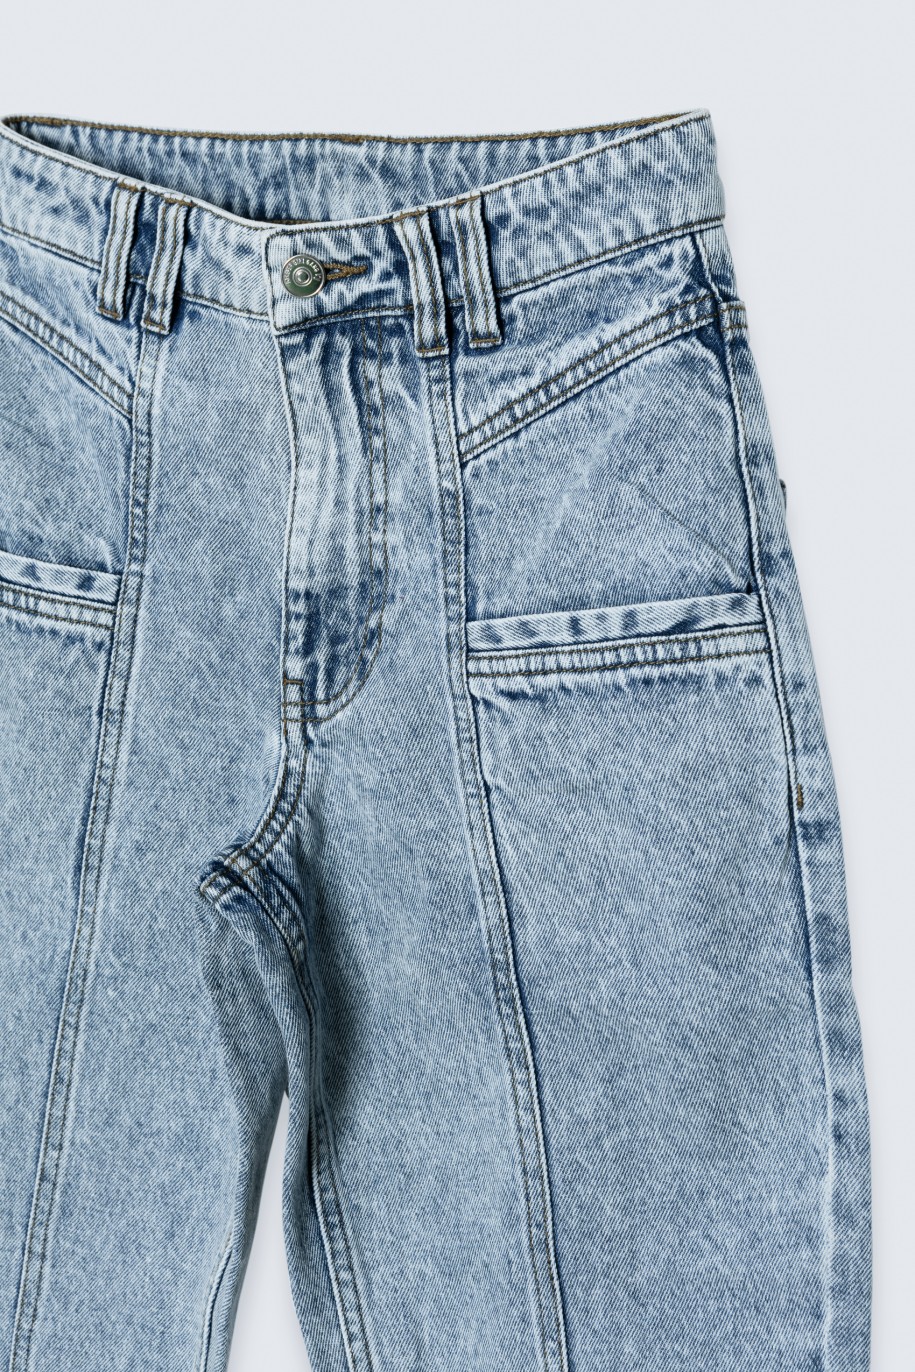 Niebieskie jeansy typu mom fit z przeszyciami - 36667